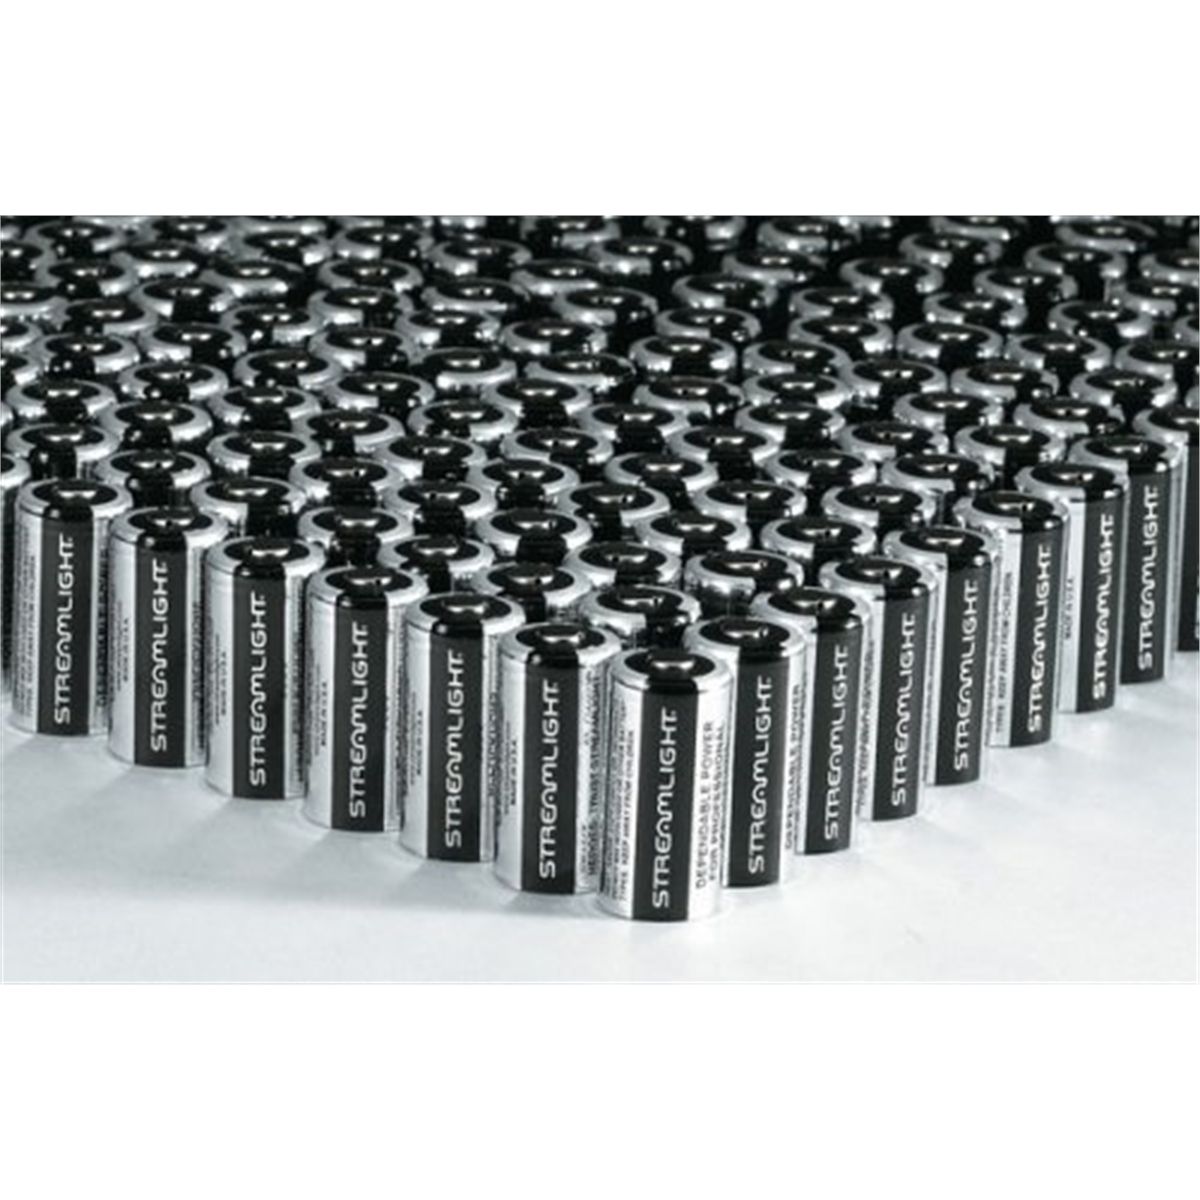 3V CR123 Lithium Batteries 400 Pack